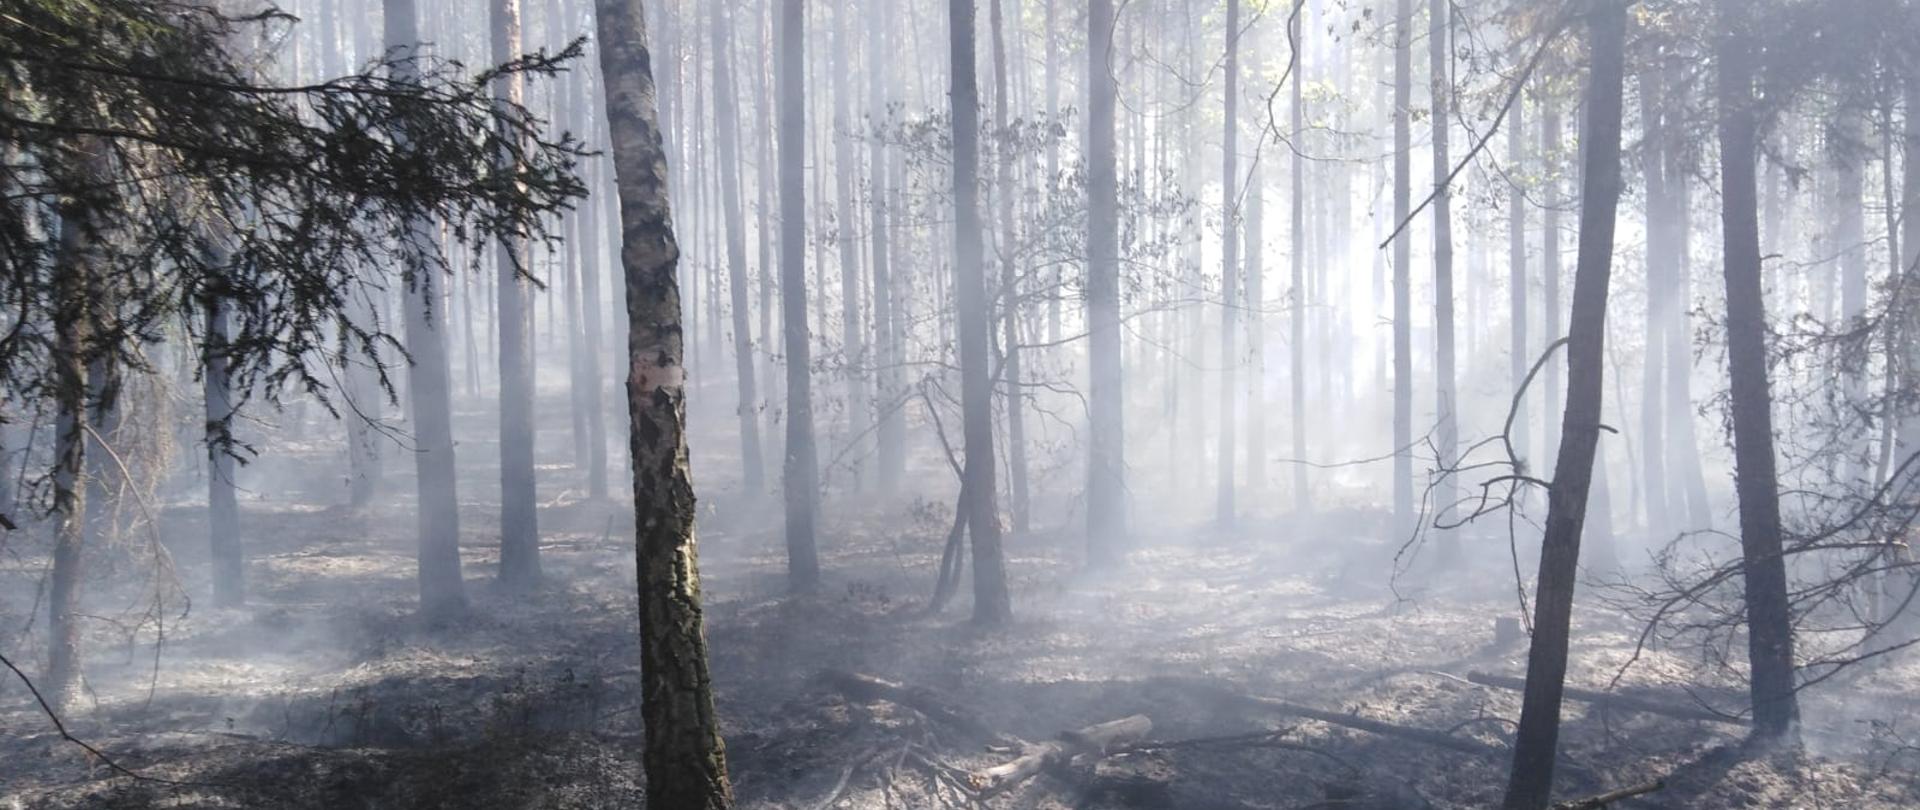 Drzewa w lesie. Pomiędzy drzewami unosi się dym. Na ziemi leżą spalone drzewa i popiół.